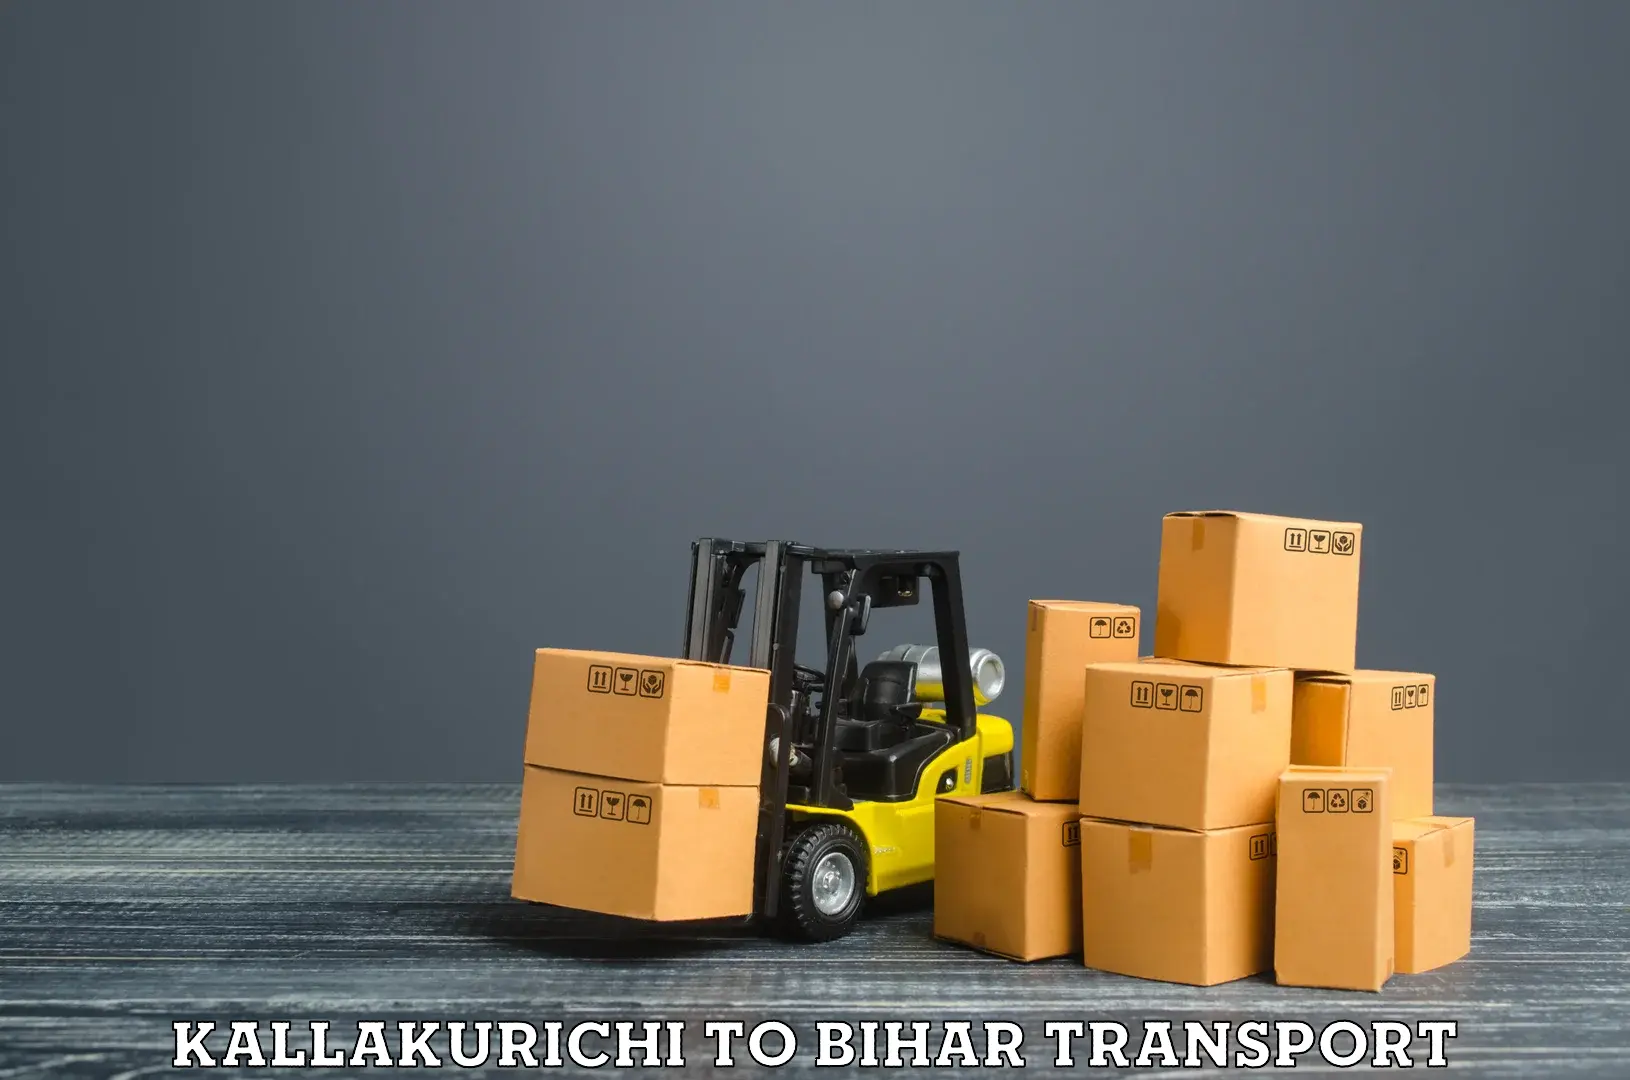 Furniture transport service in Kallakurichi to Bharwara